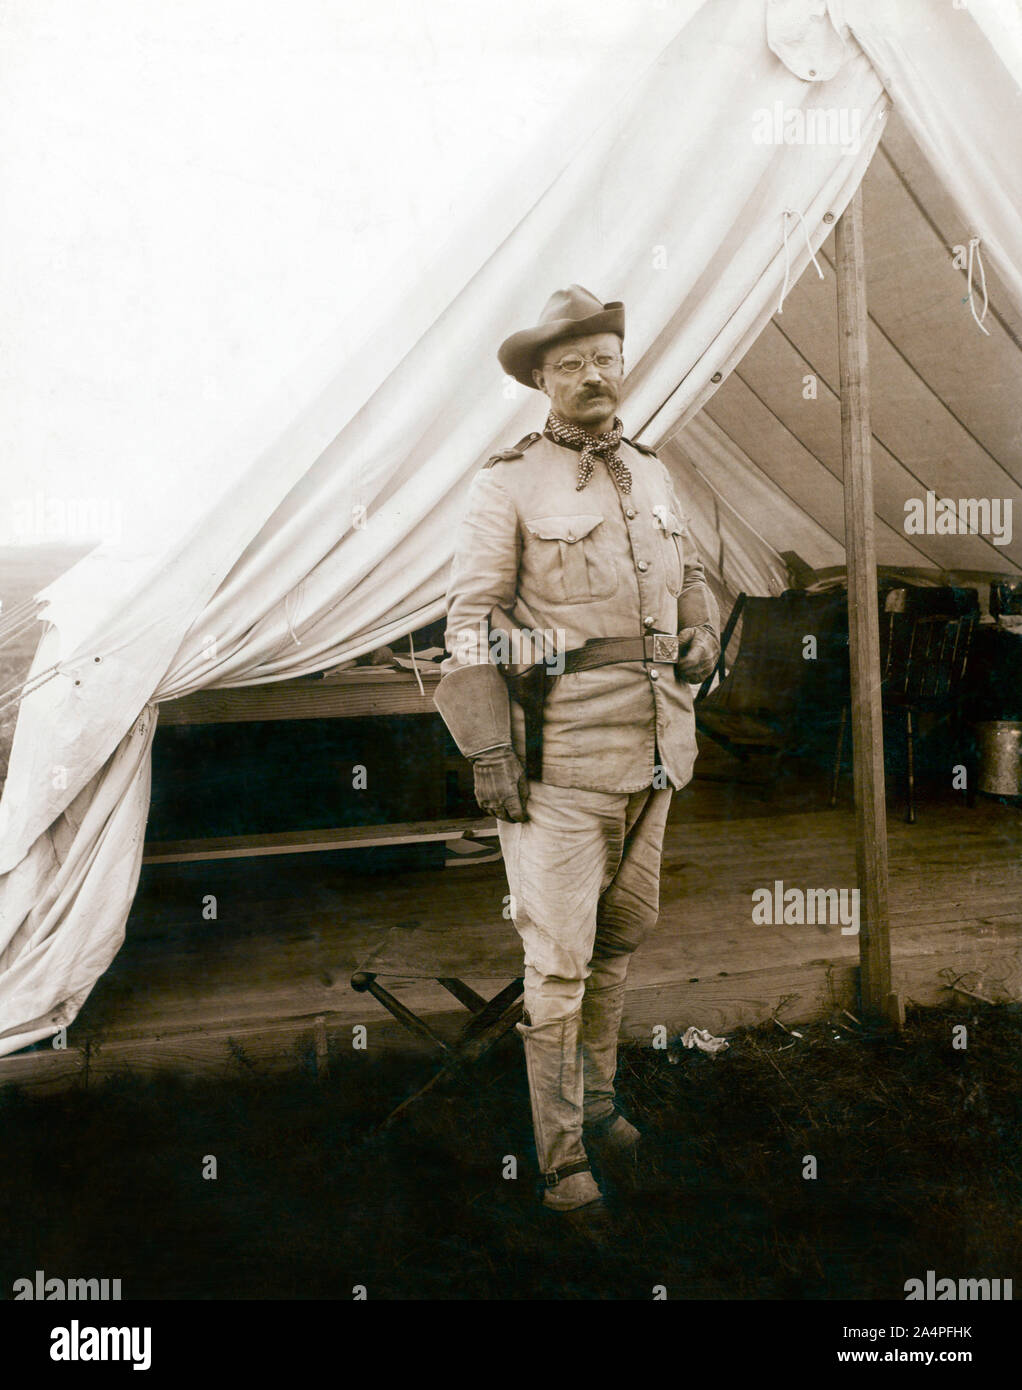 Le Colonel Theodore Roosevelt, un comité permanent Portrait en uniforme militaire, Montauk, New York, USA, photo de Siegel-Cooper Co., Septembre 1898 Banque D'Images